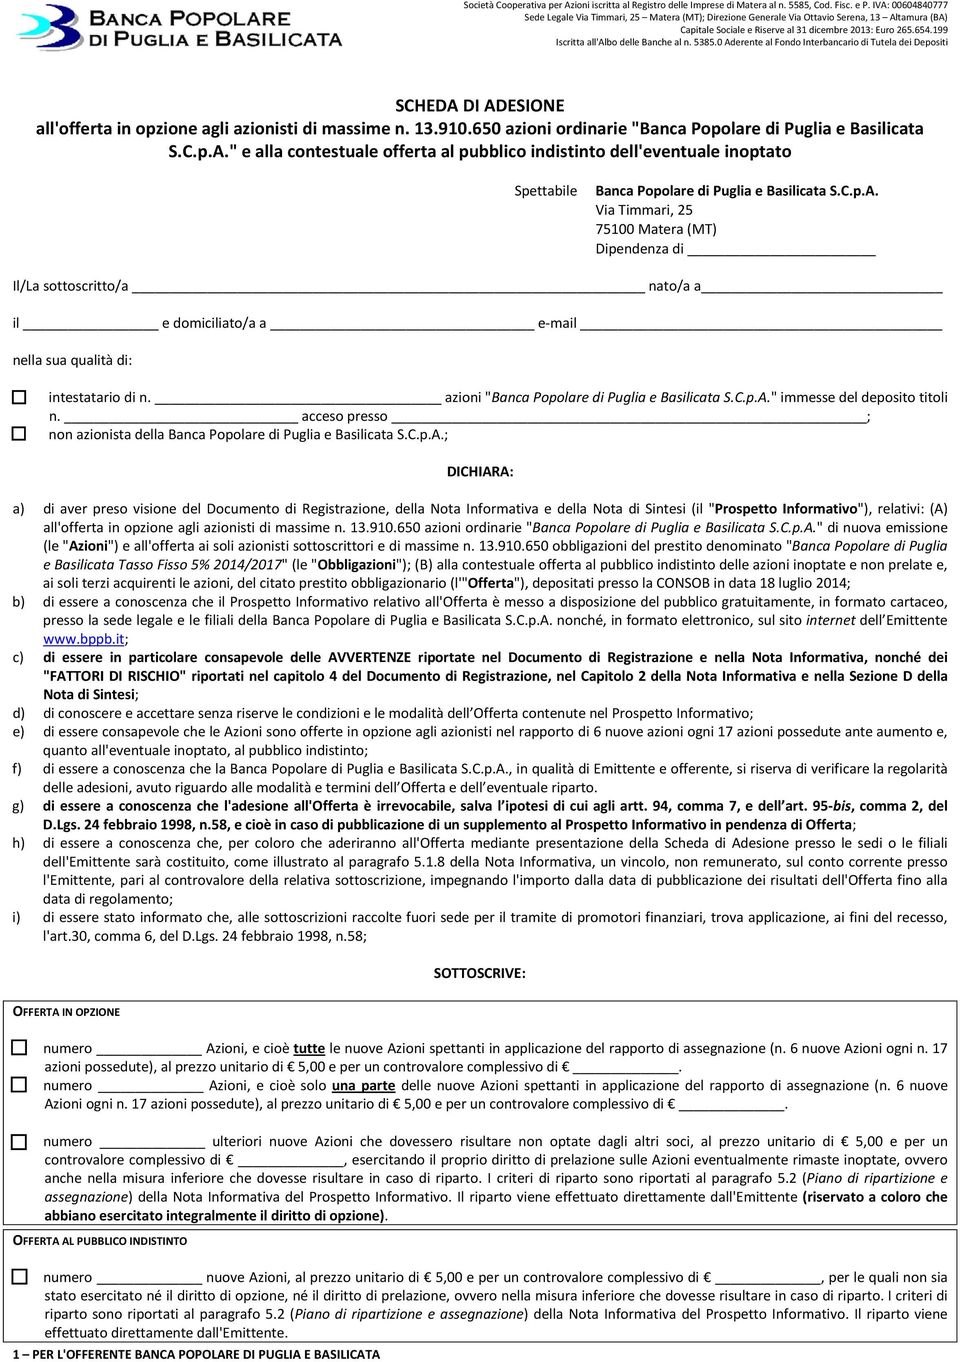 azioni "Banca Popolare di Puglia e Basilicata S.C.p.A.